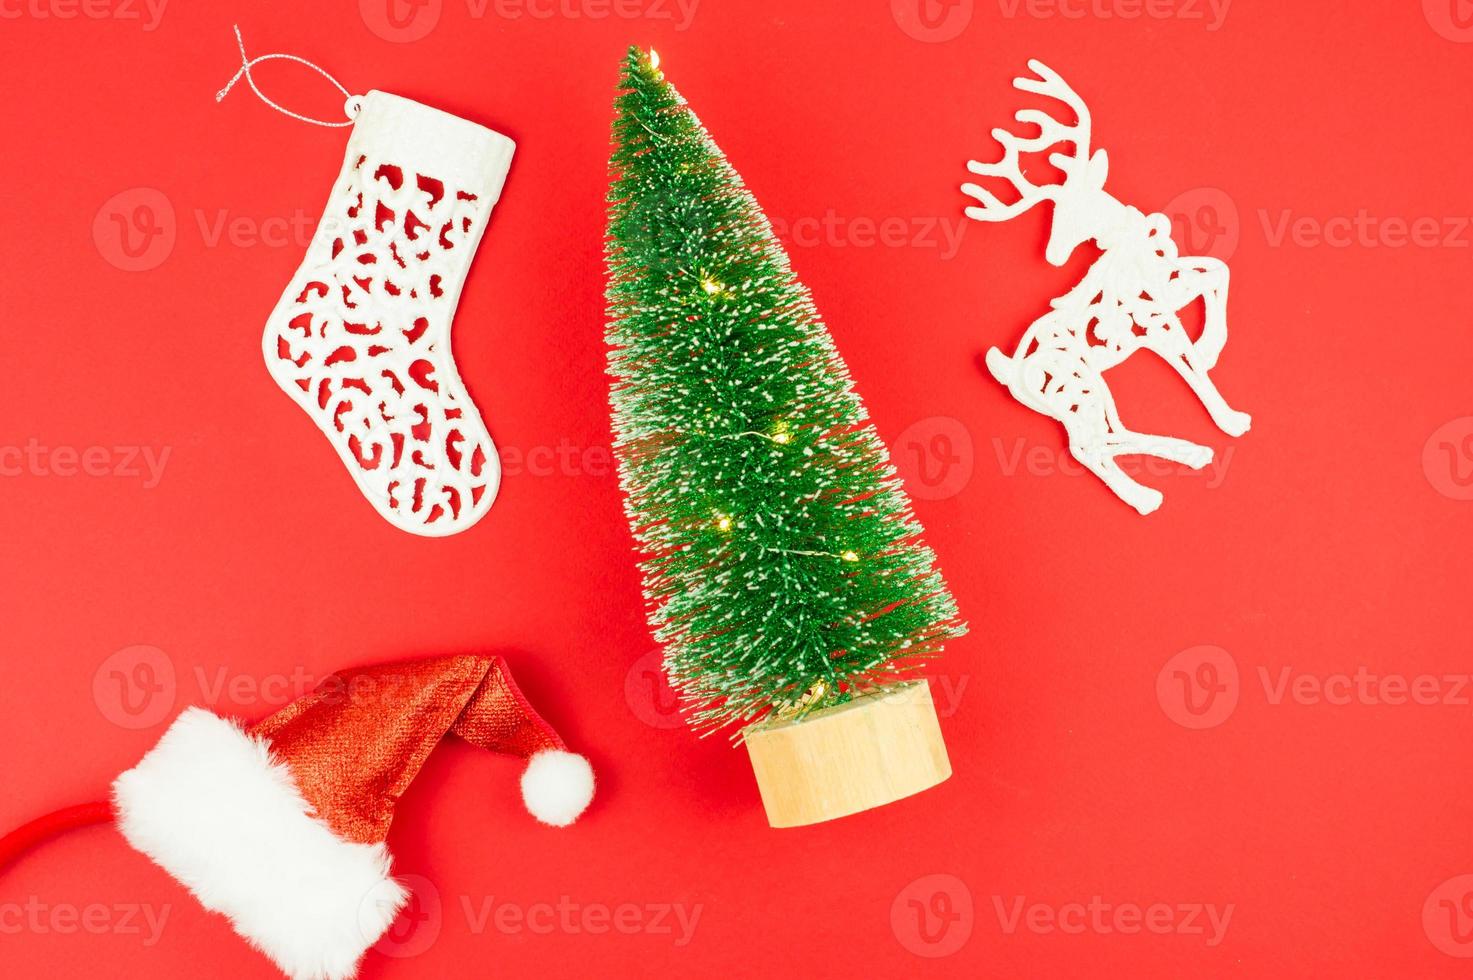 disposição plana. vista do topo. sobre um fundo vermelho, uma árvore de brinquedo com luzes, um chapéu de Papai Noel, um veado branco e uma meia de natal. foto